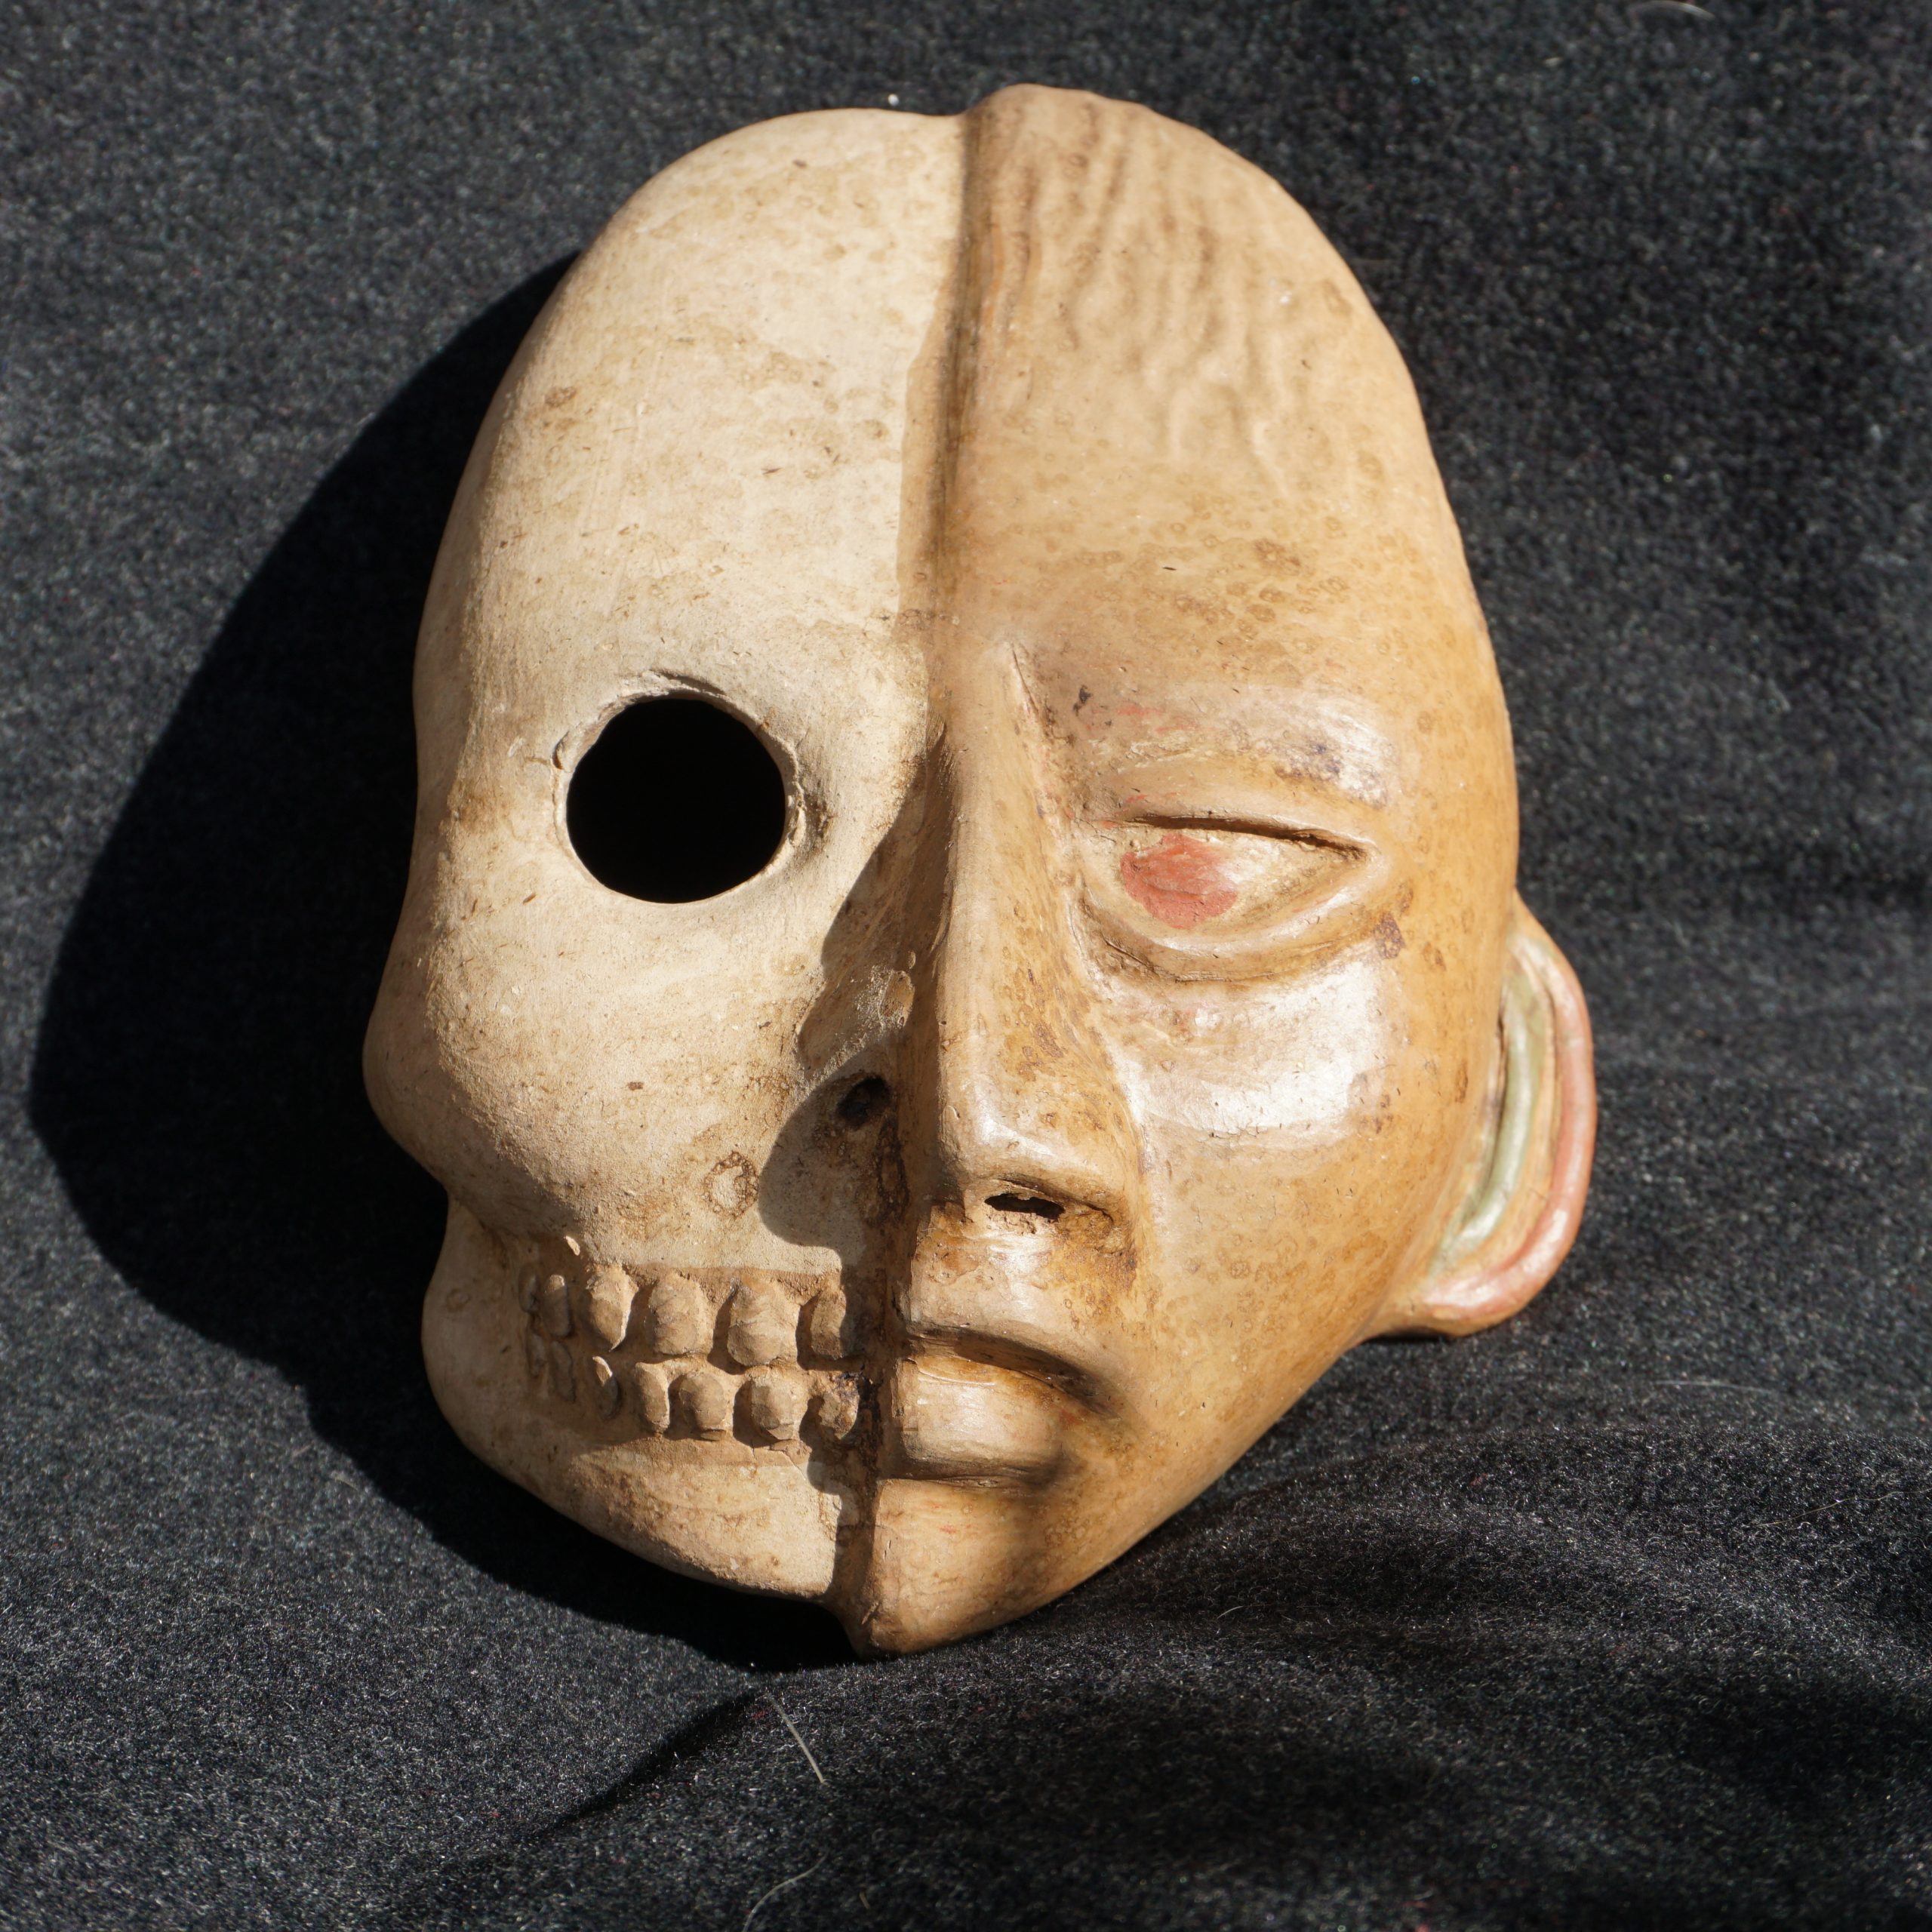 Un masque ramené du Mexique : posé sur un tissu, il représente un visage en pierre scindé en deux dans la verticale, un côté en chair, l'autre en squelette apparent 